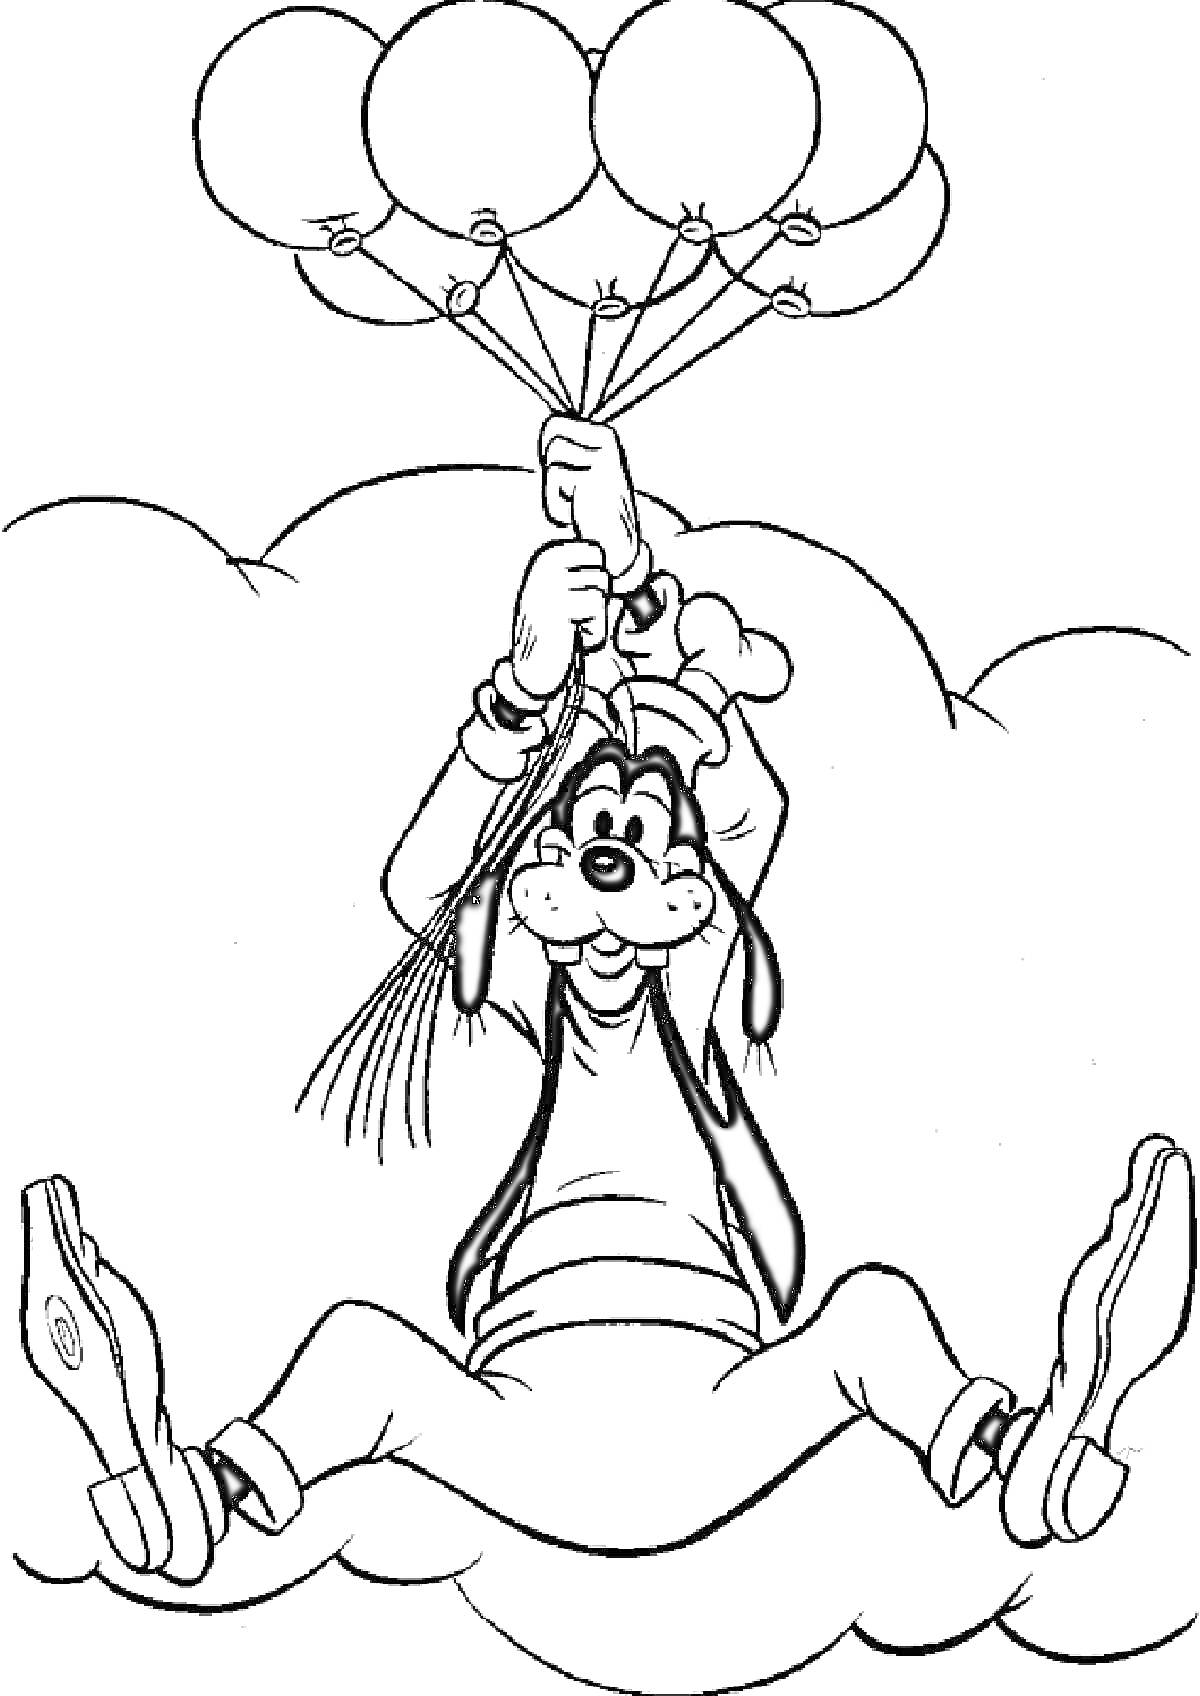 Гуфи держится за пять воздушных шариков в облаках